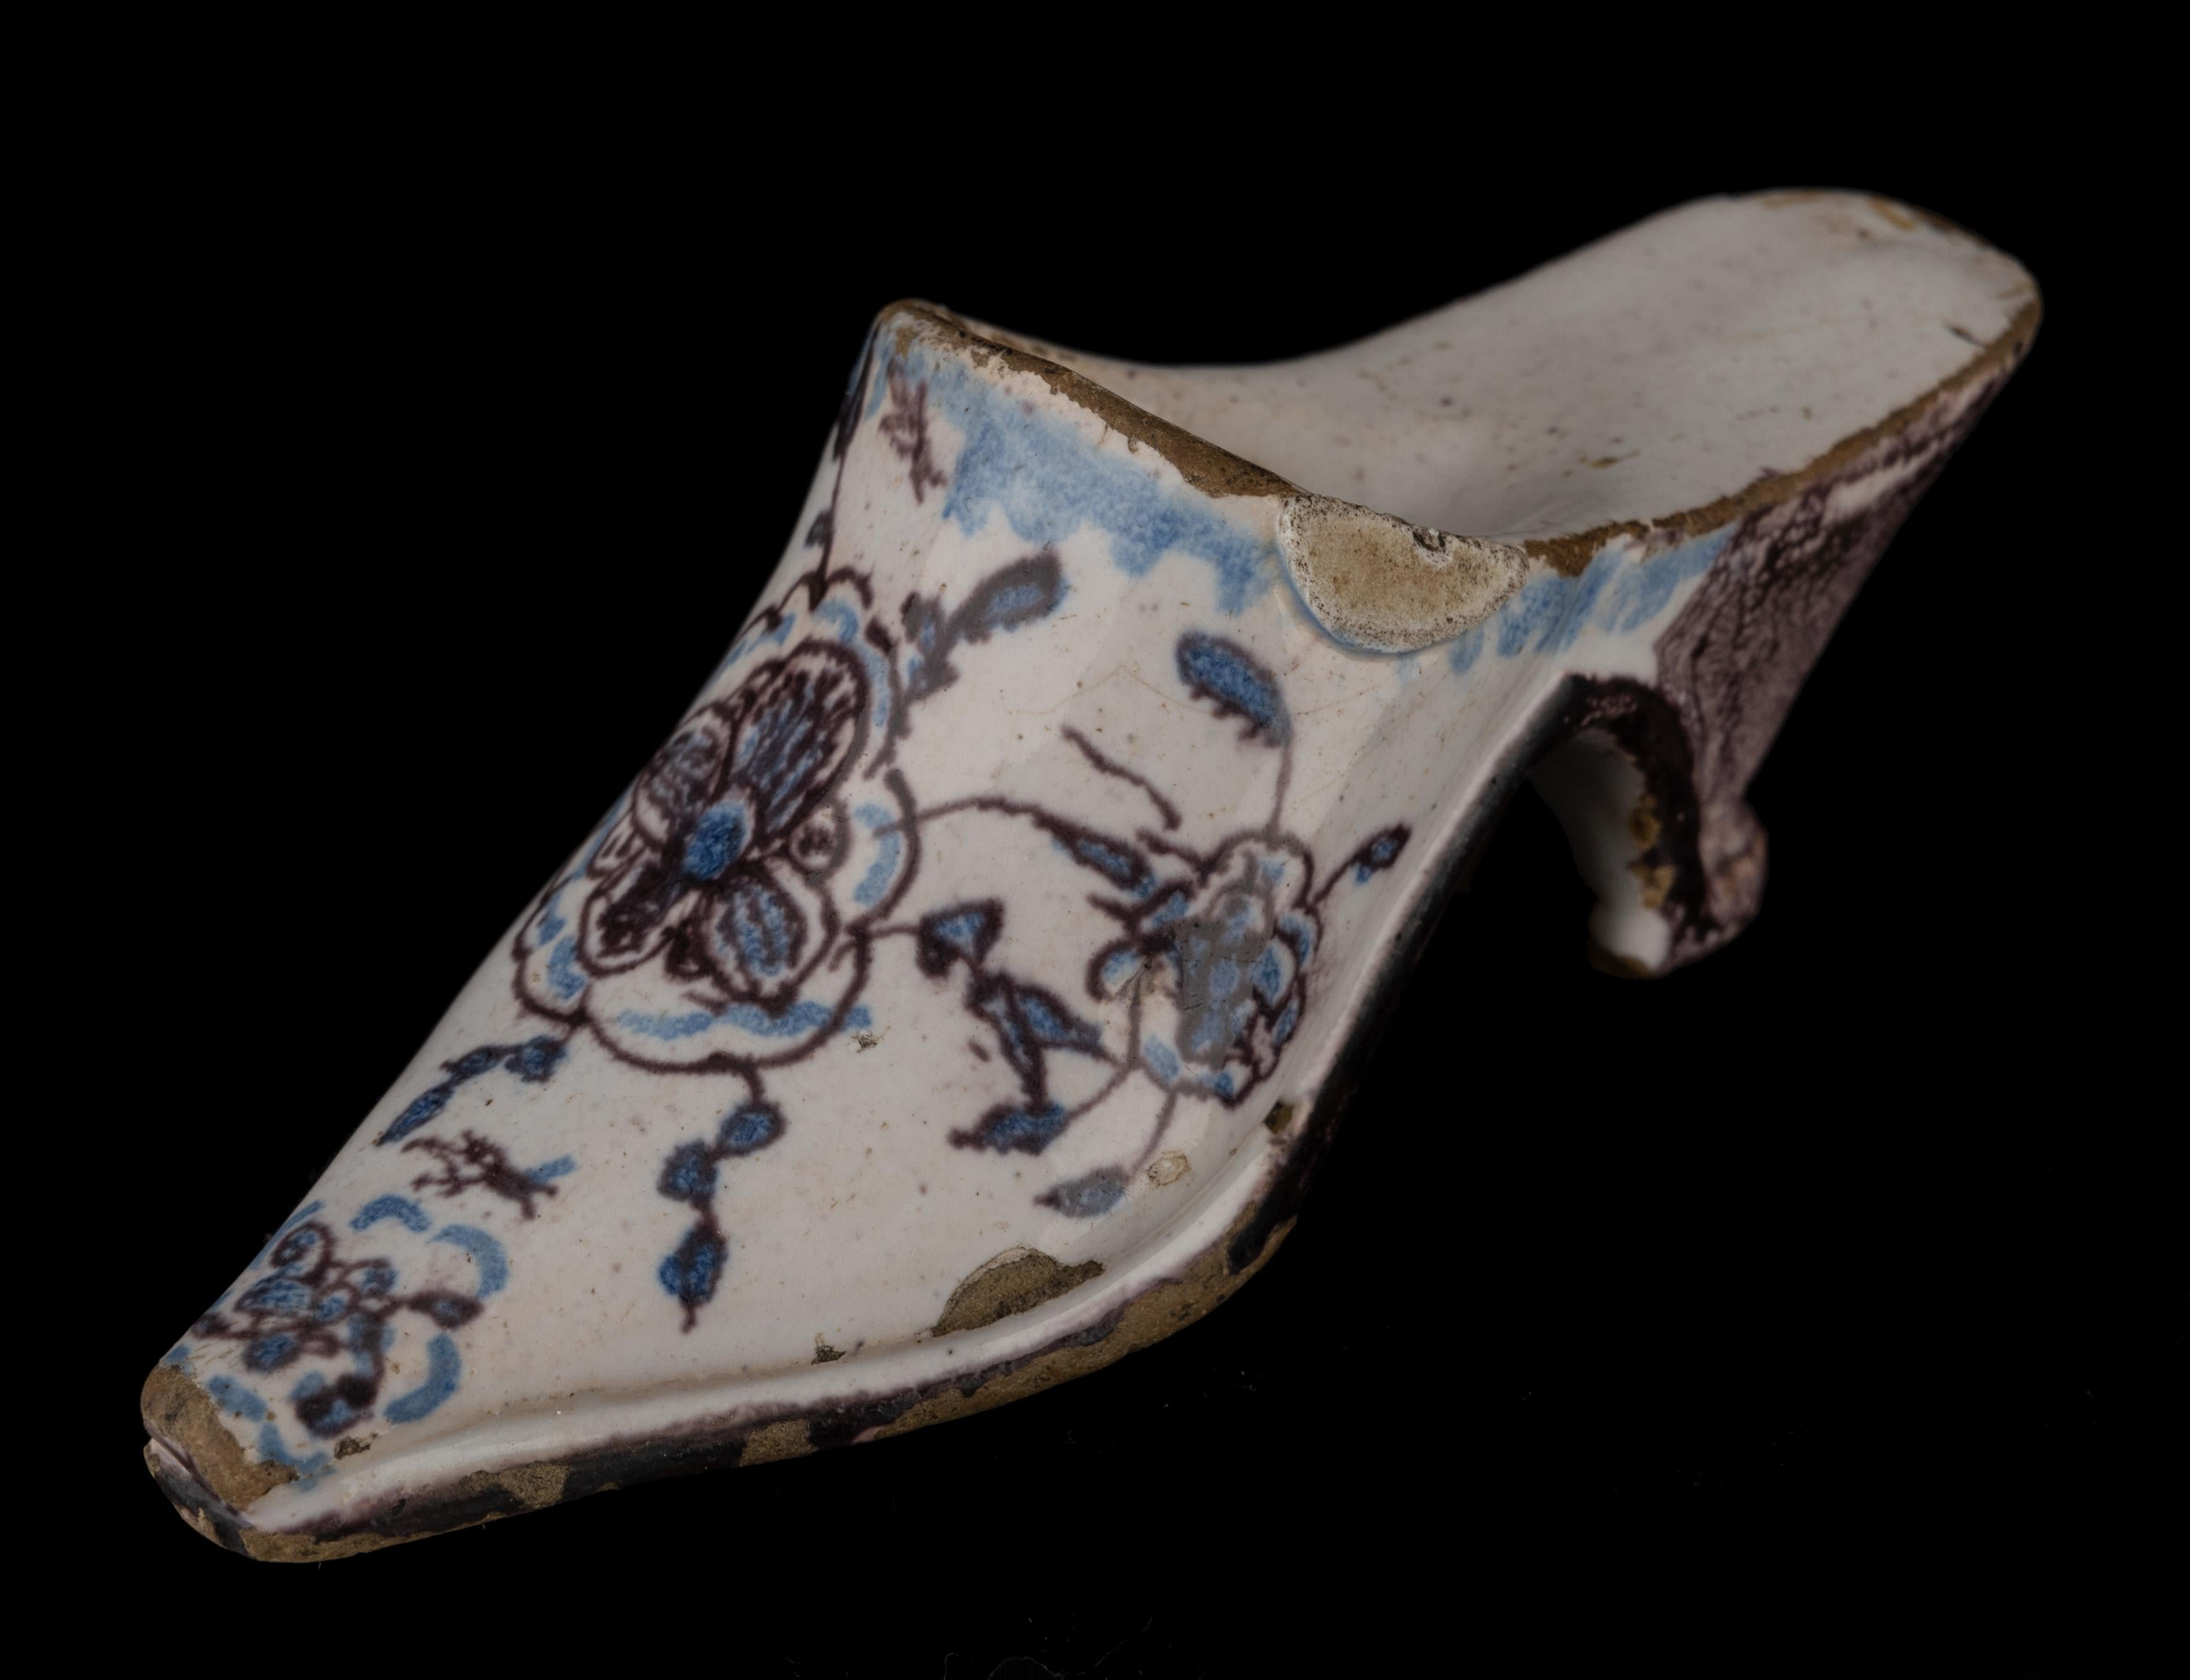 Maultier mit Blumen in Violett und Blau Amsterdam, 1740-1760
Das Maultier hat eine spitze Nase und ein hohes Vorderteil. Es ist in Blau und Lila mit Blumen bemalt. Direkt unter dem Schaftrand ist ein blaues Band mit Punkten angebracht. Der Absatz